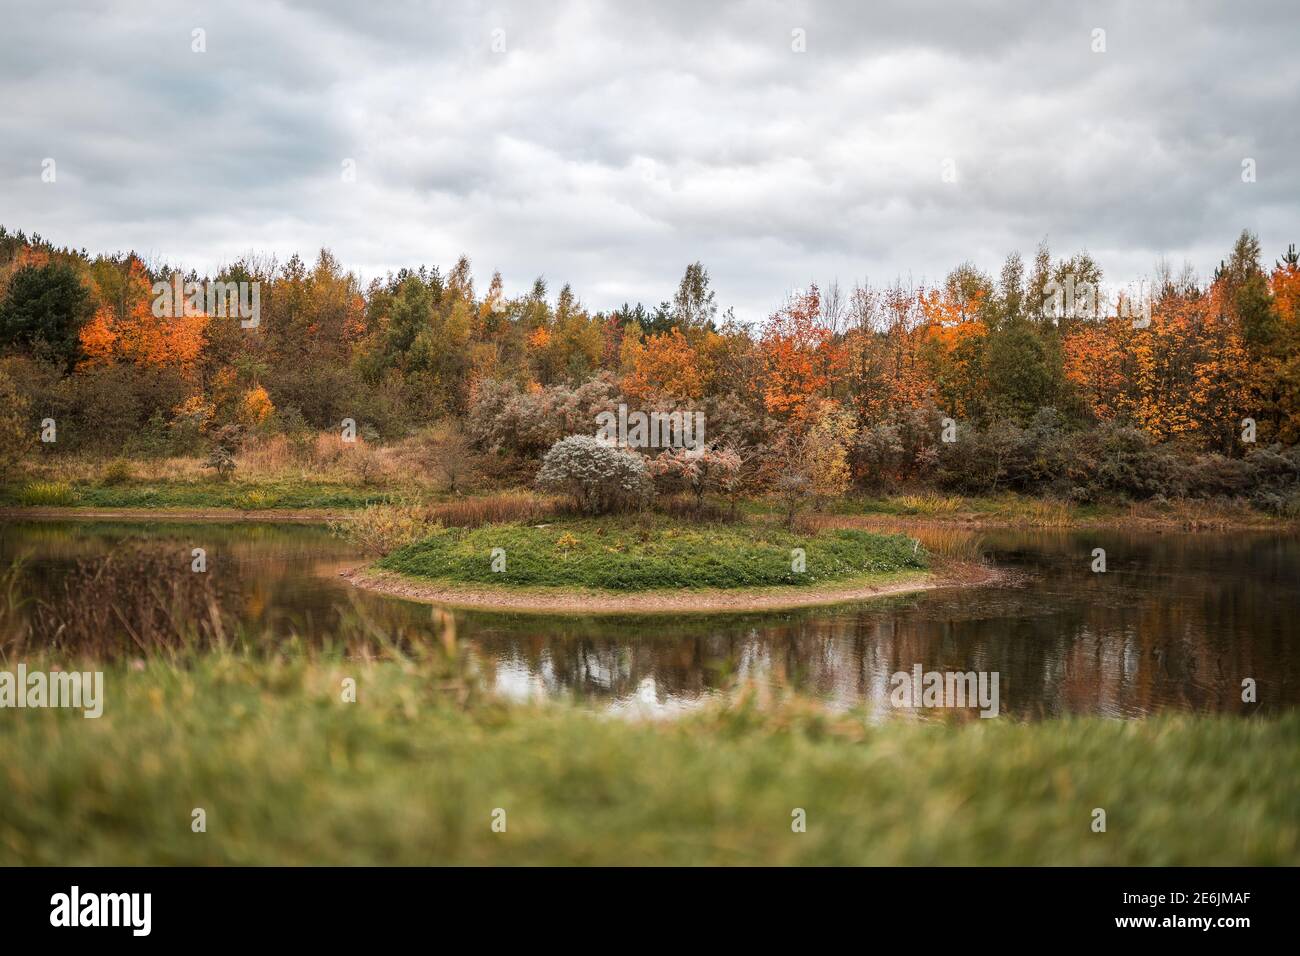 Herbstszene in einem Naturschutzgebiet mit einem Teich und Insel in der Mitte des Sees wunderschöne orange Farben Blätter Fallen im Herbst Wildtiere Reflexionen Stockfoto